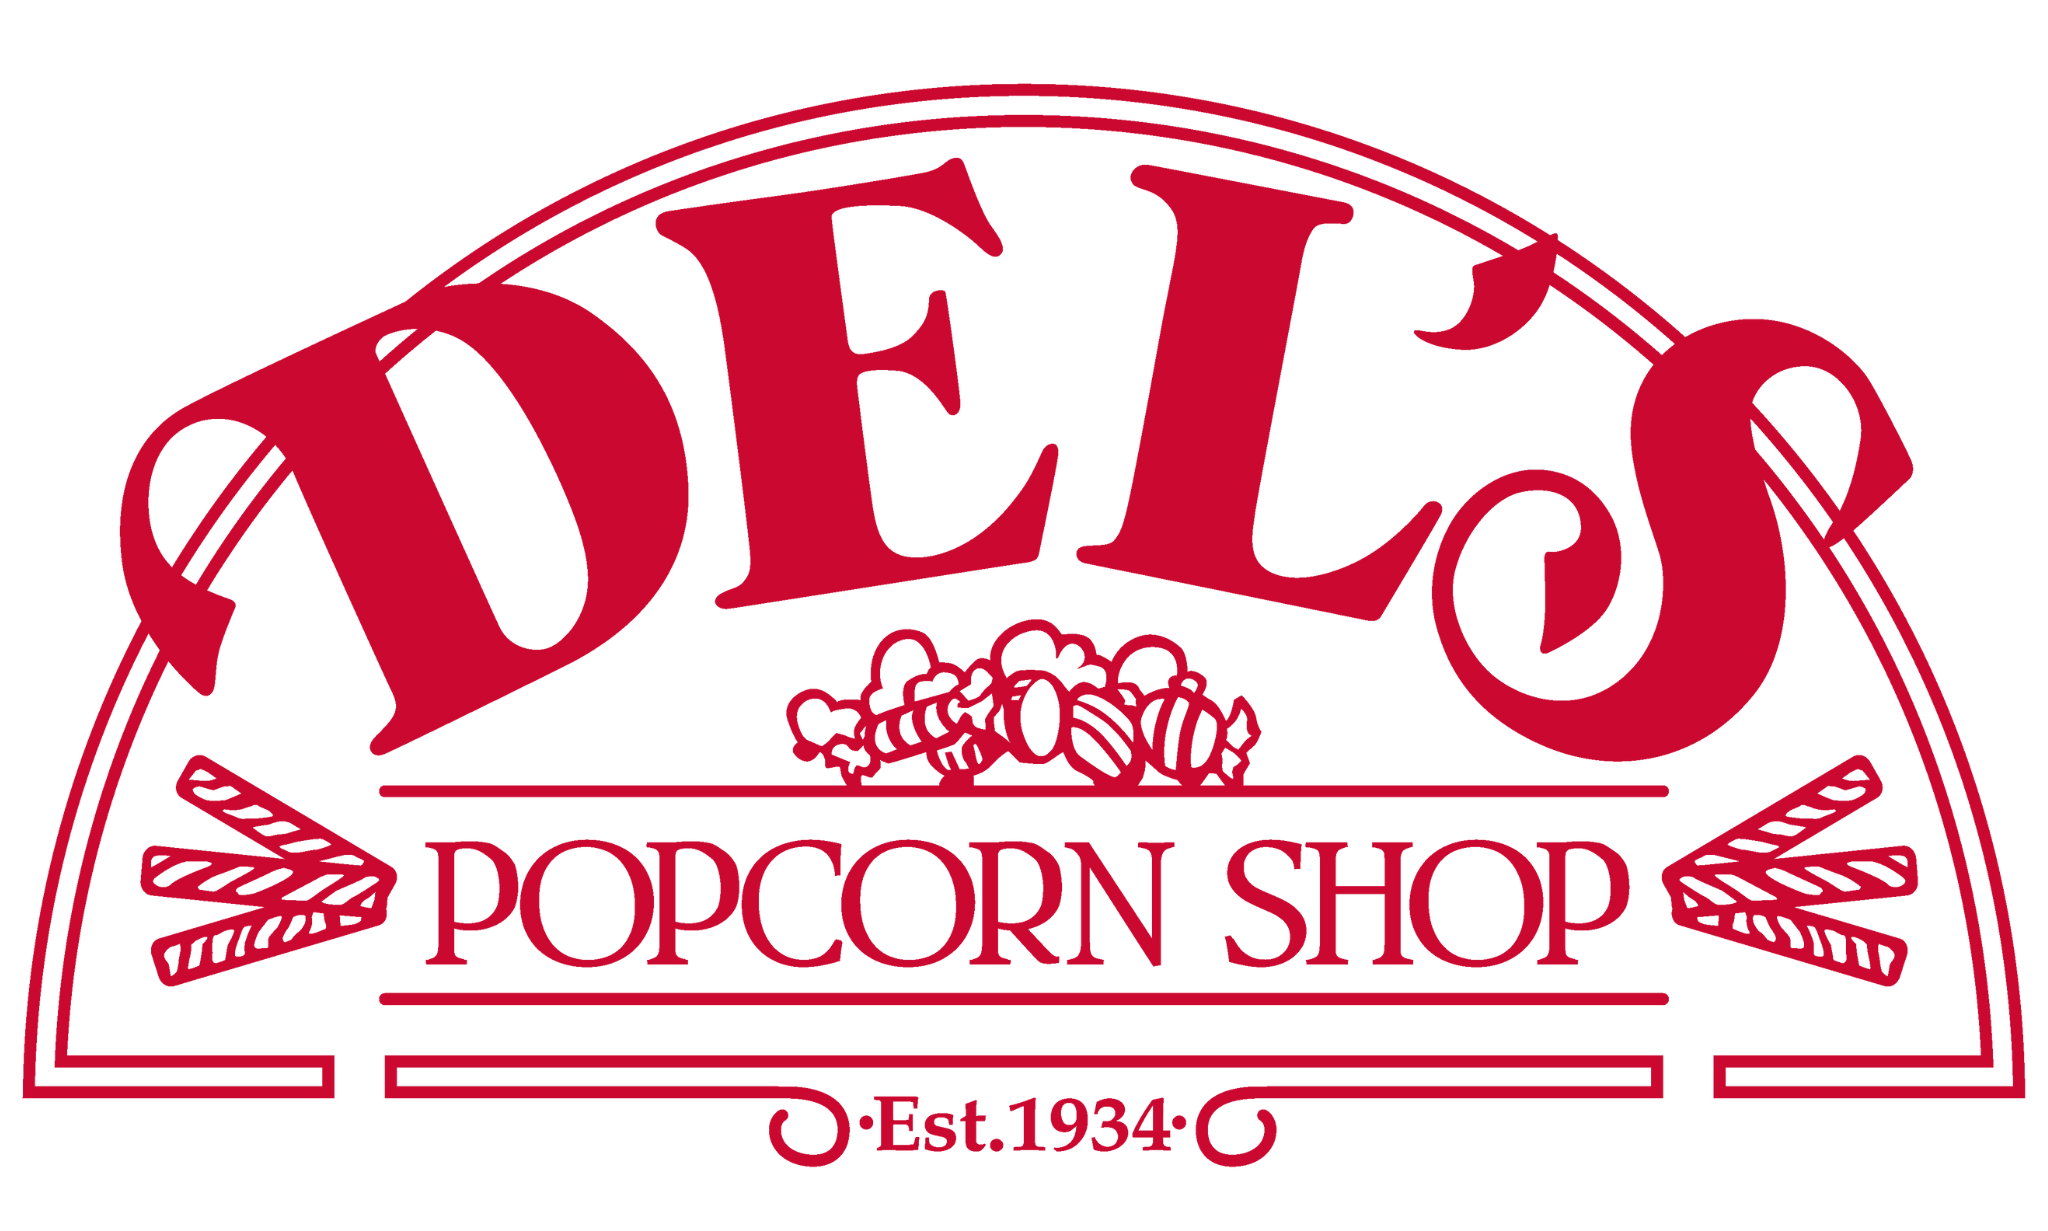 Del's Popcorn Shop